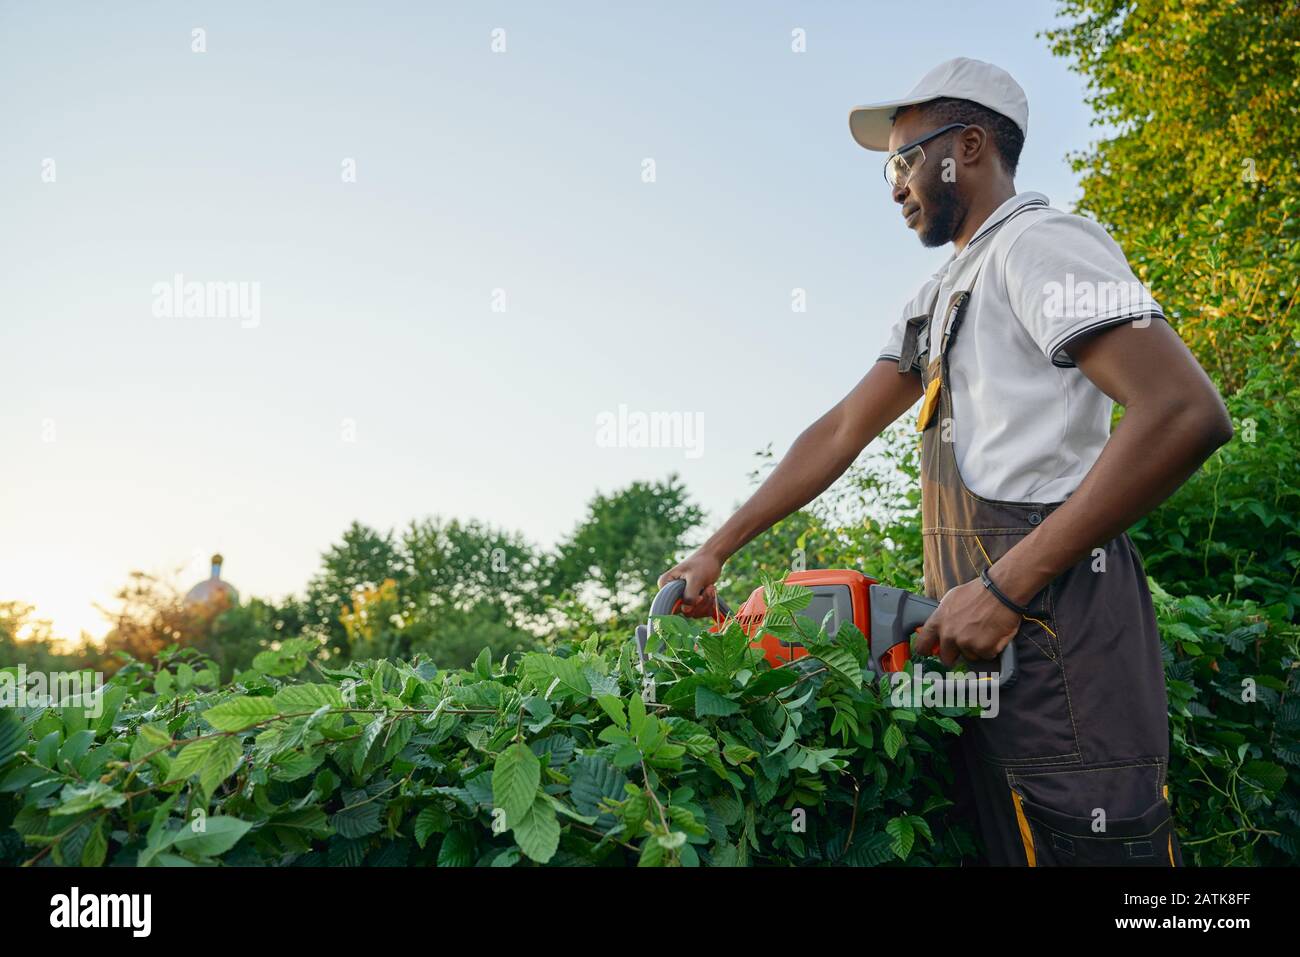 Jardinier mâle concentré dans les vêtements de travail et les lunettes de protection coupant les buissons avec la taille-haie de patrouille dans le jardin. Homme africain dans l'élagage général spécial sur les branches et les feuilles surcultivées Banque D'Images